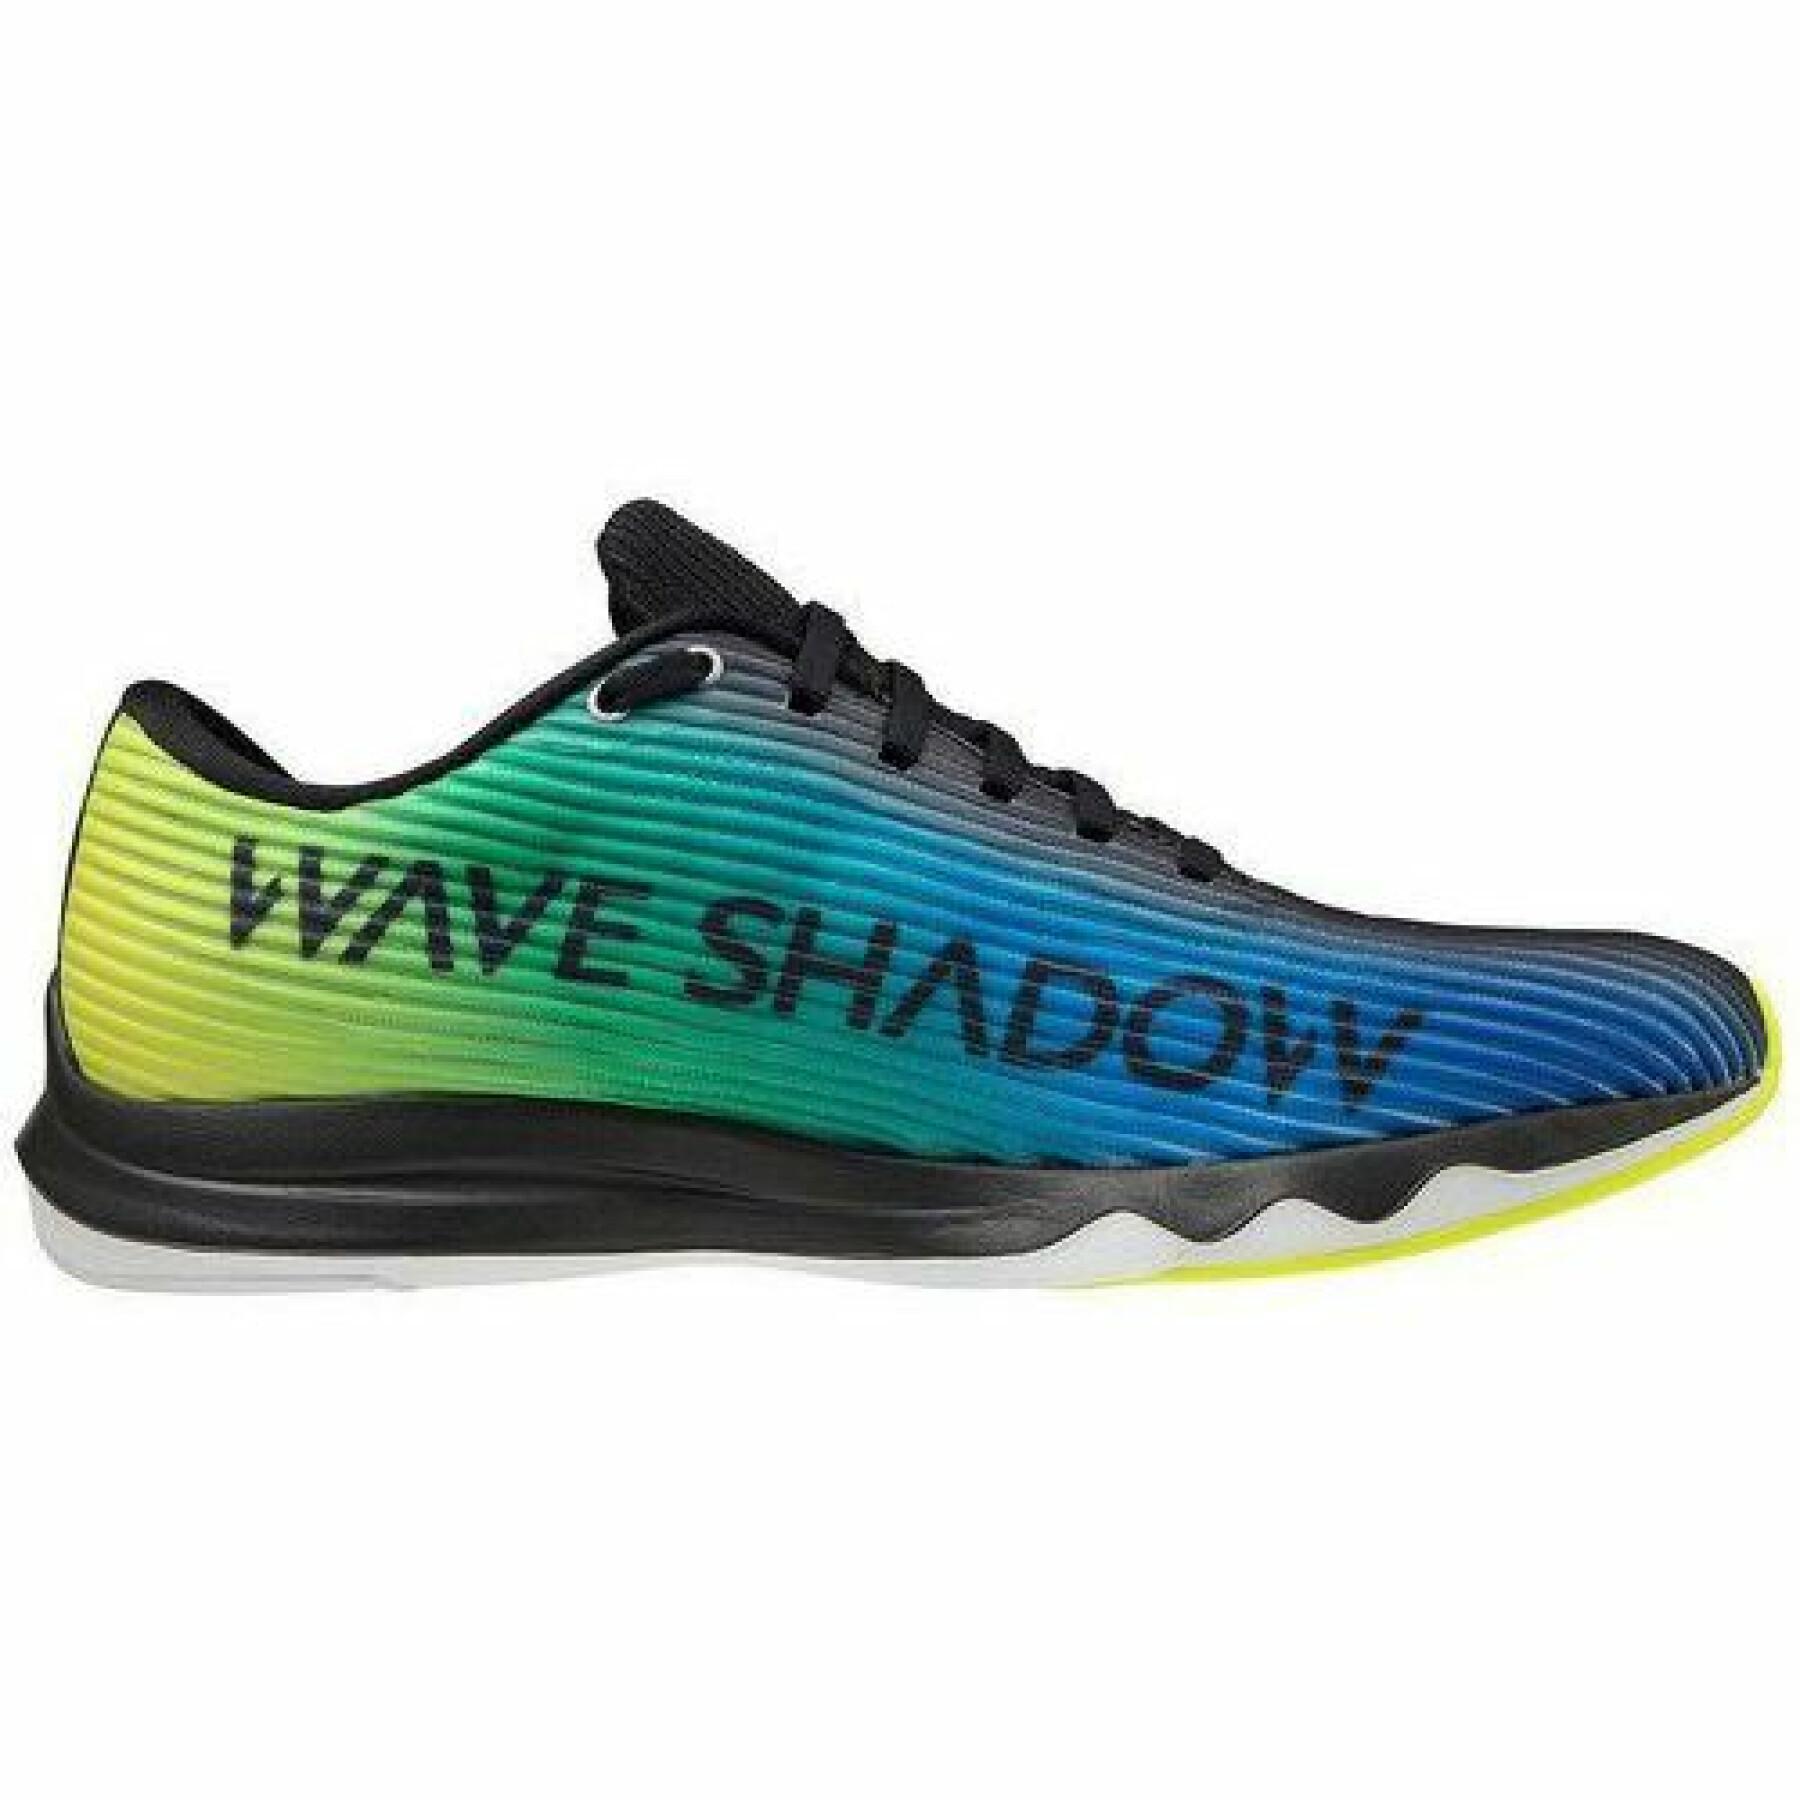 Zapatos Mizuno wave shadow 4